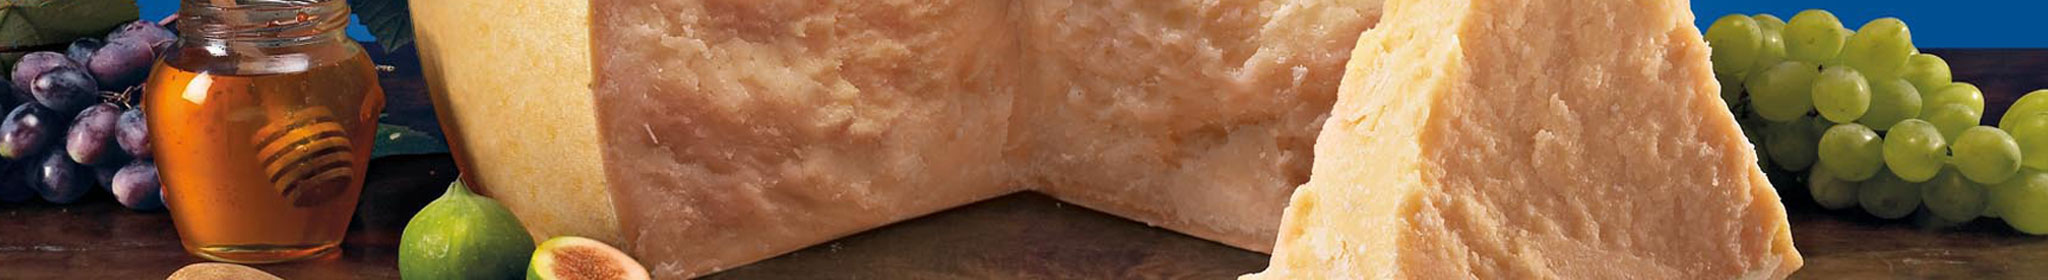 Galbani Paesano Grated Dehydrated Cheeses 85g - Galbani